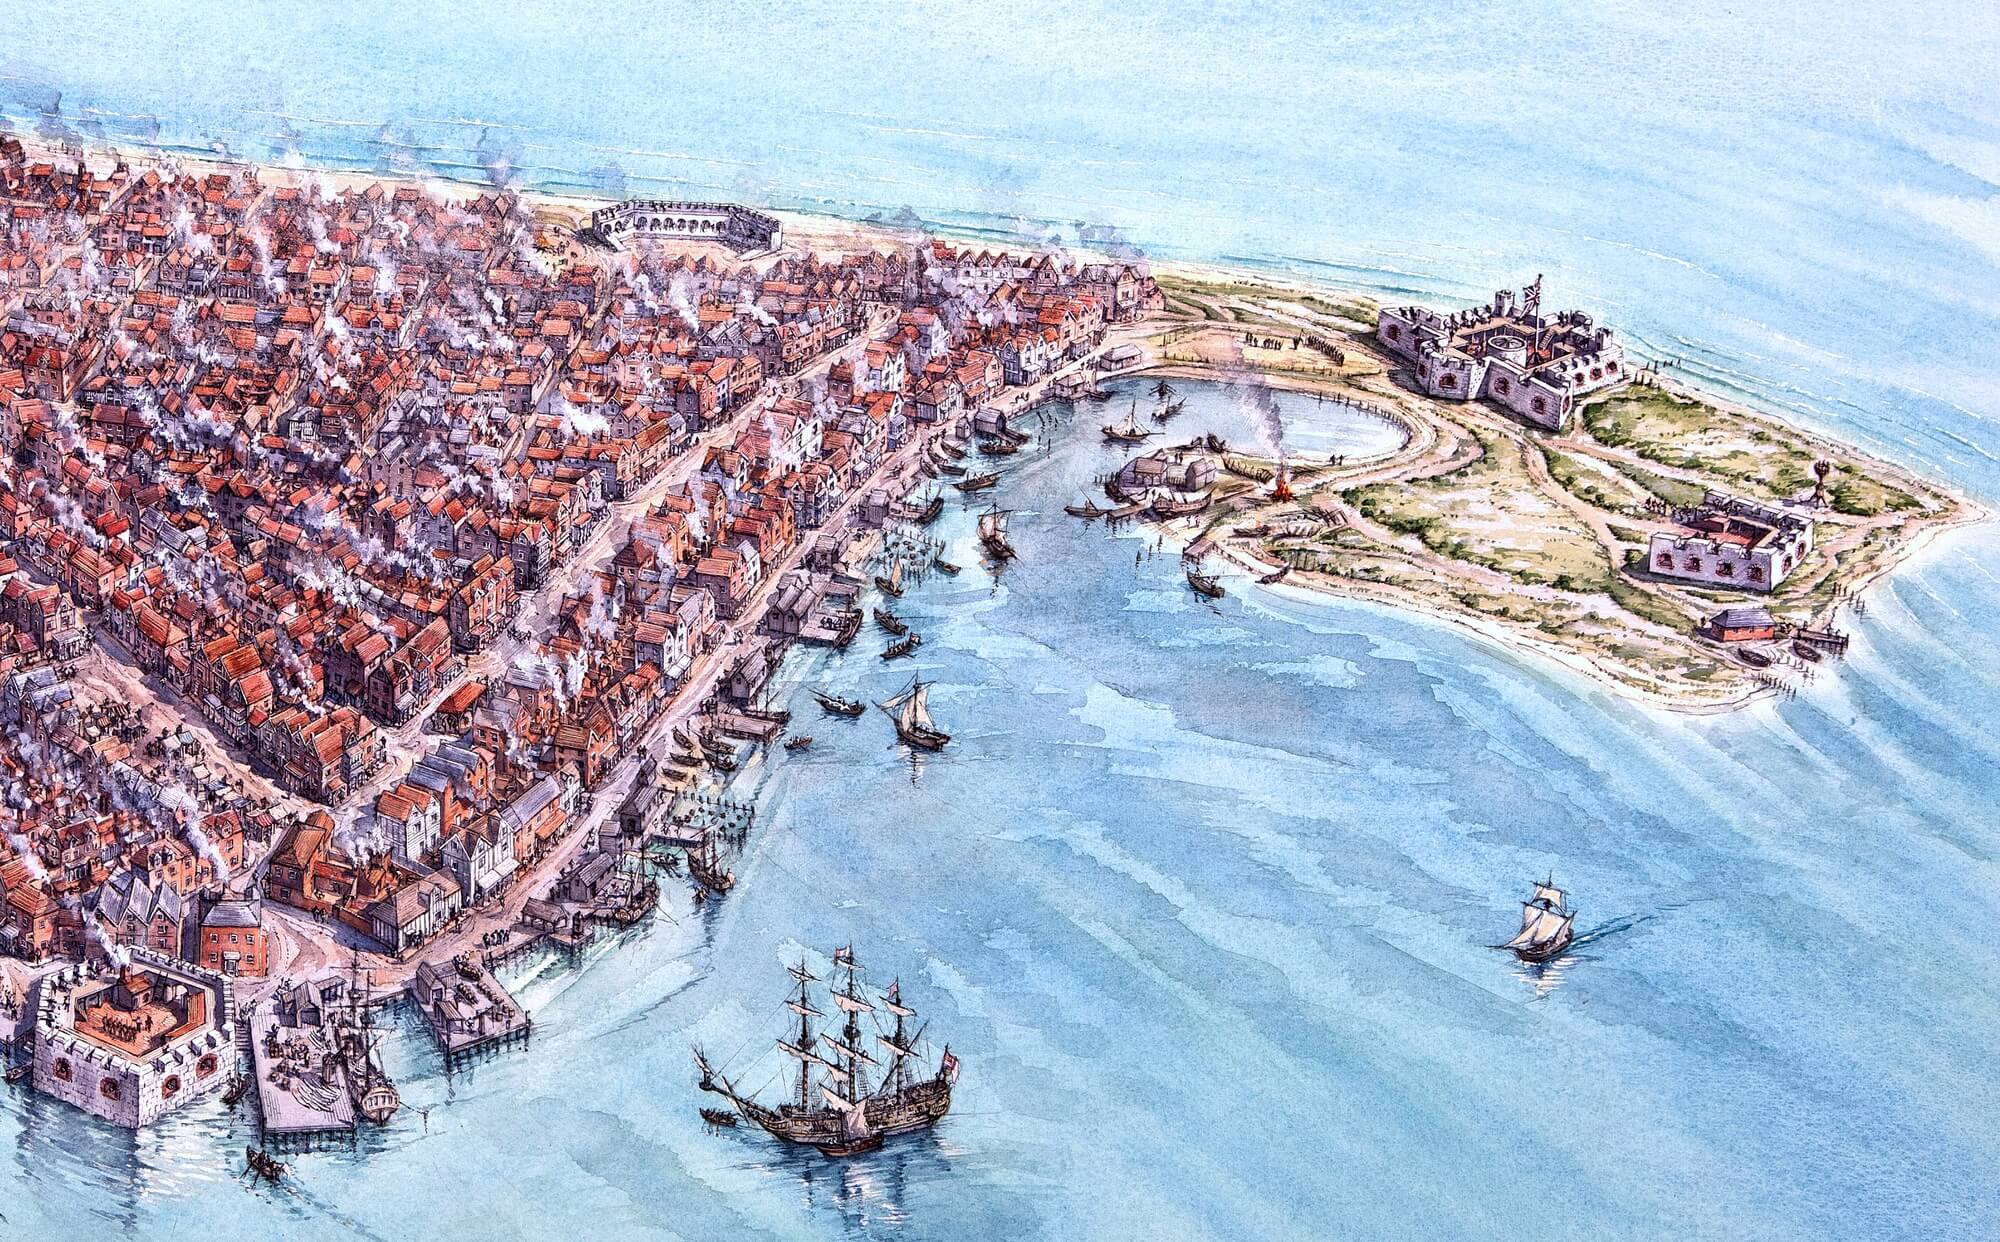 Port Royal Fort in 1690